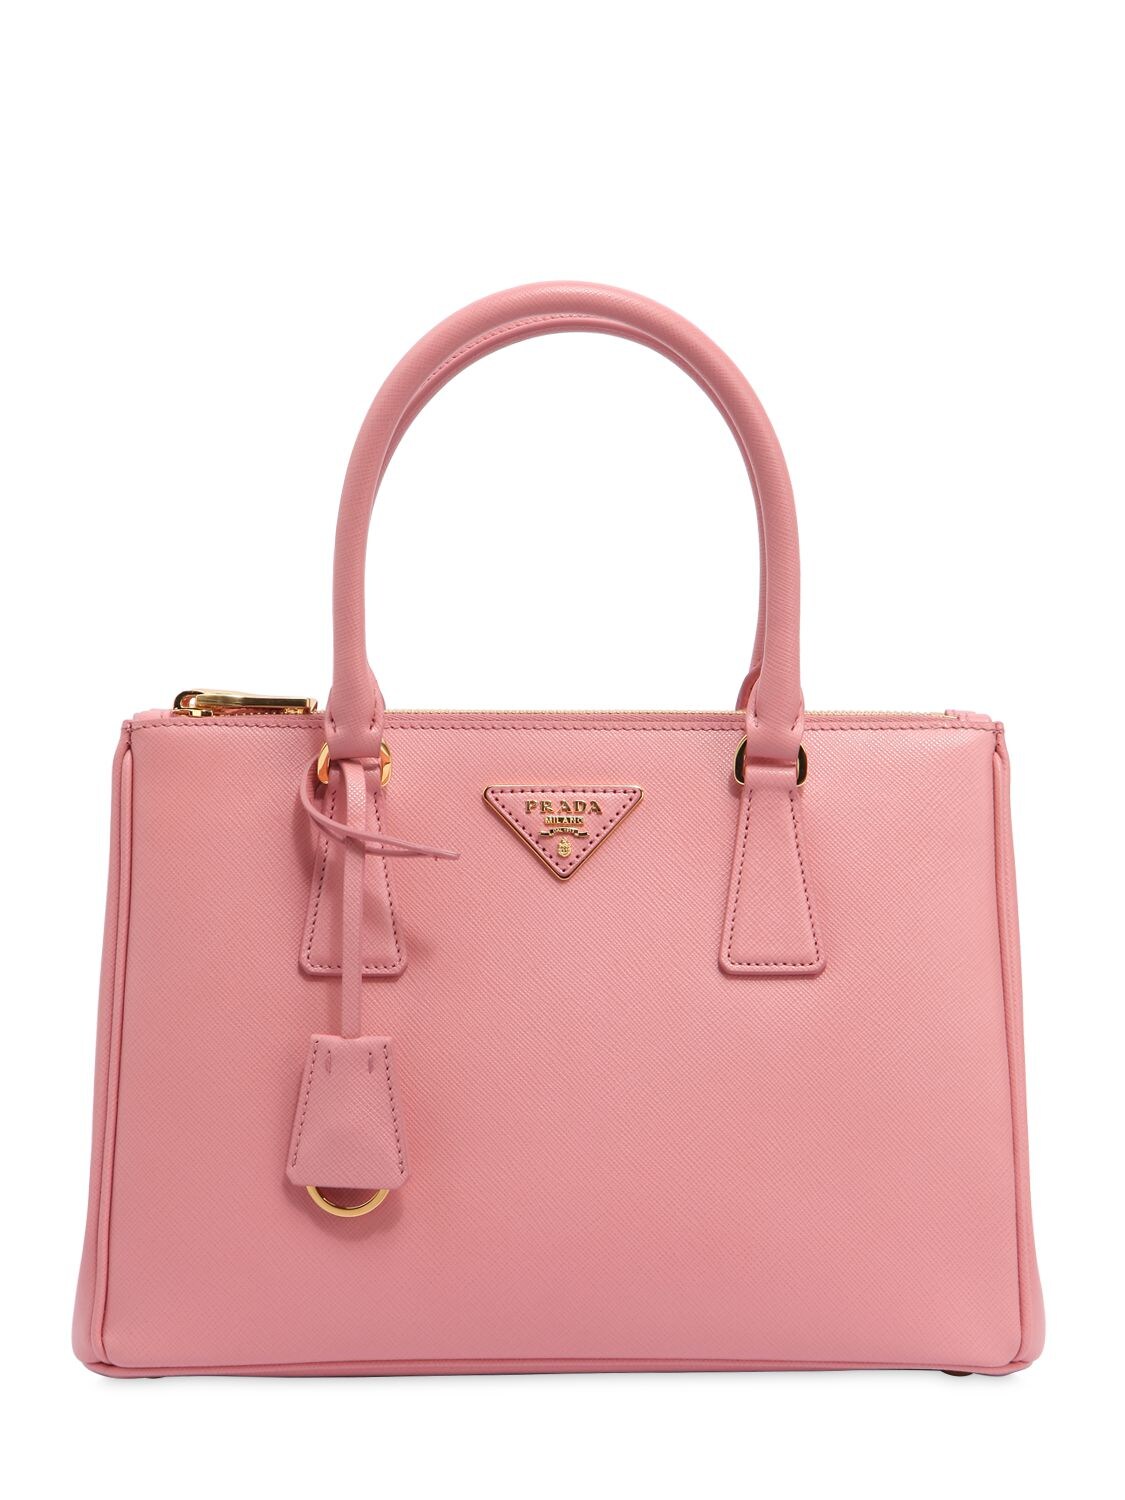 Prada Medium Galleria Saffiano Leather Bag In Pink